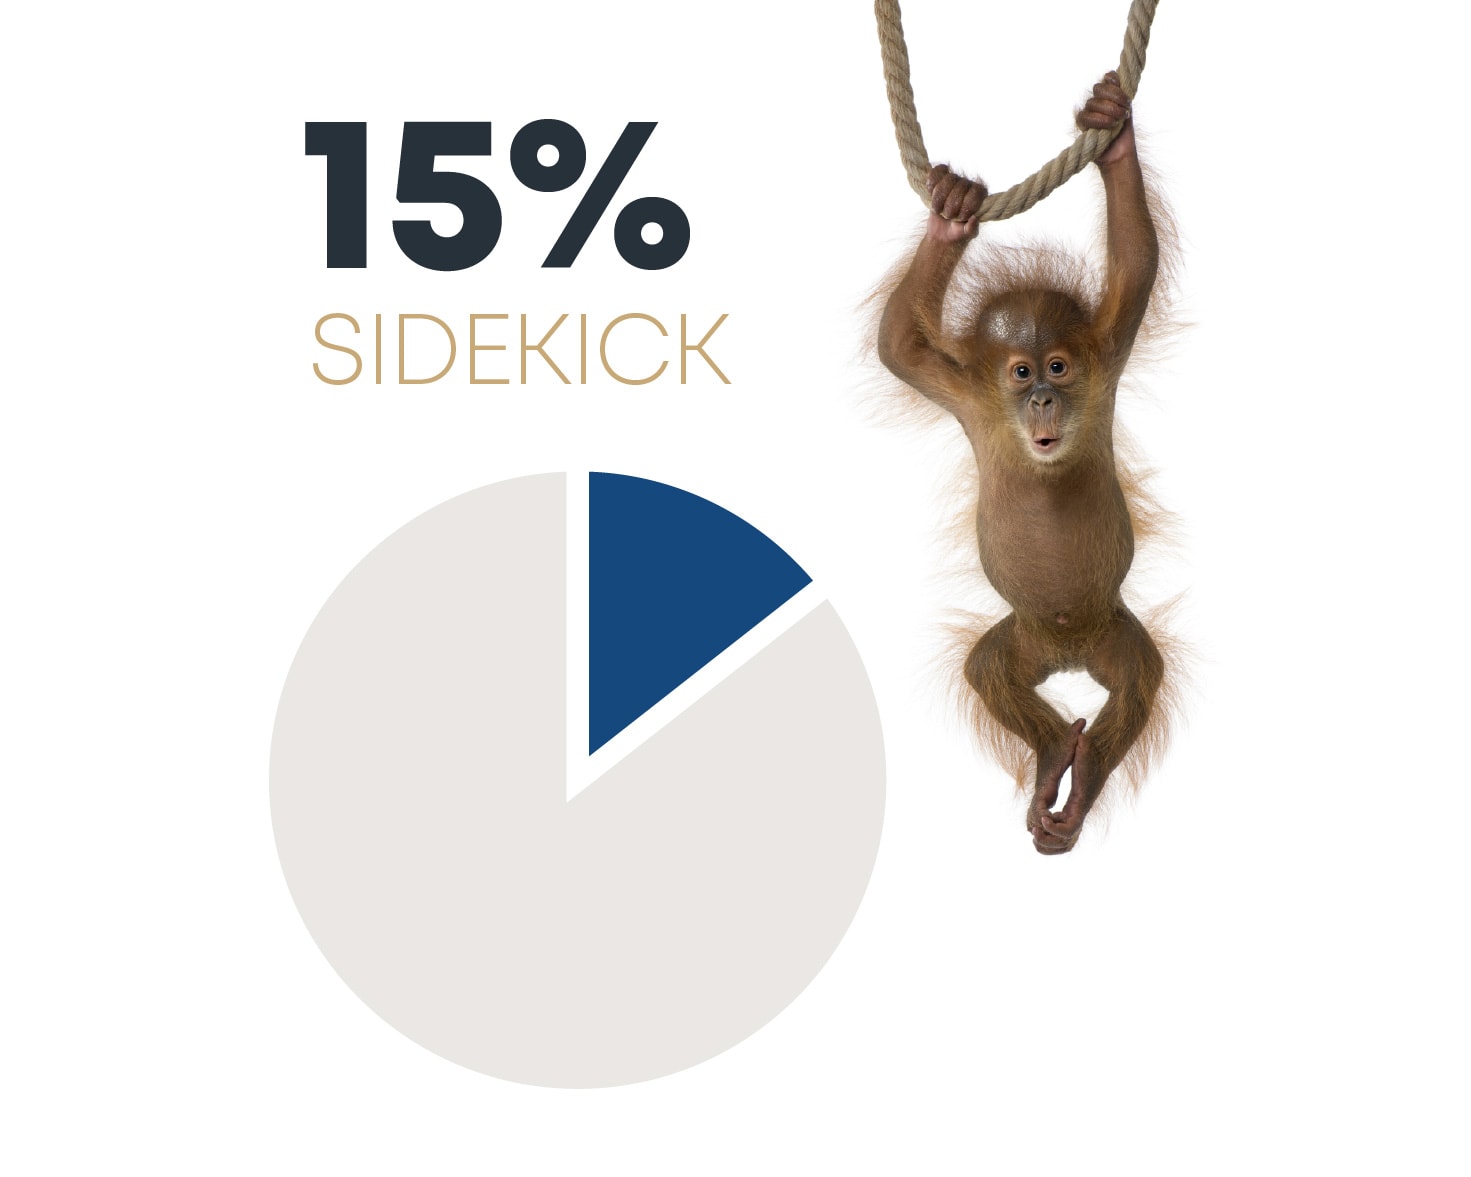 15% sidekick pie chart